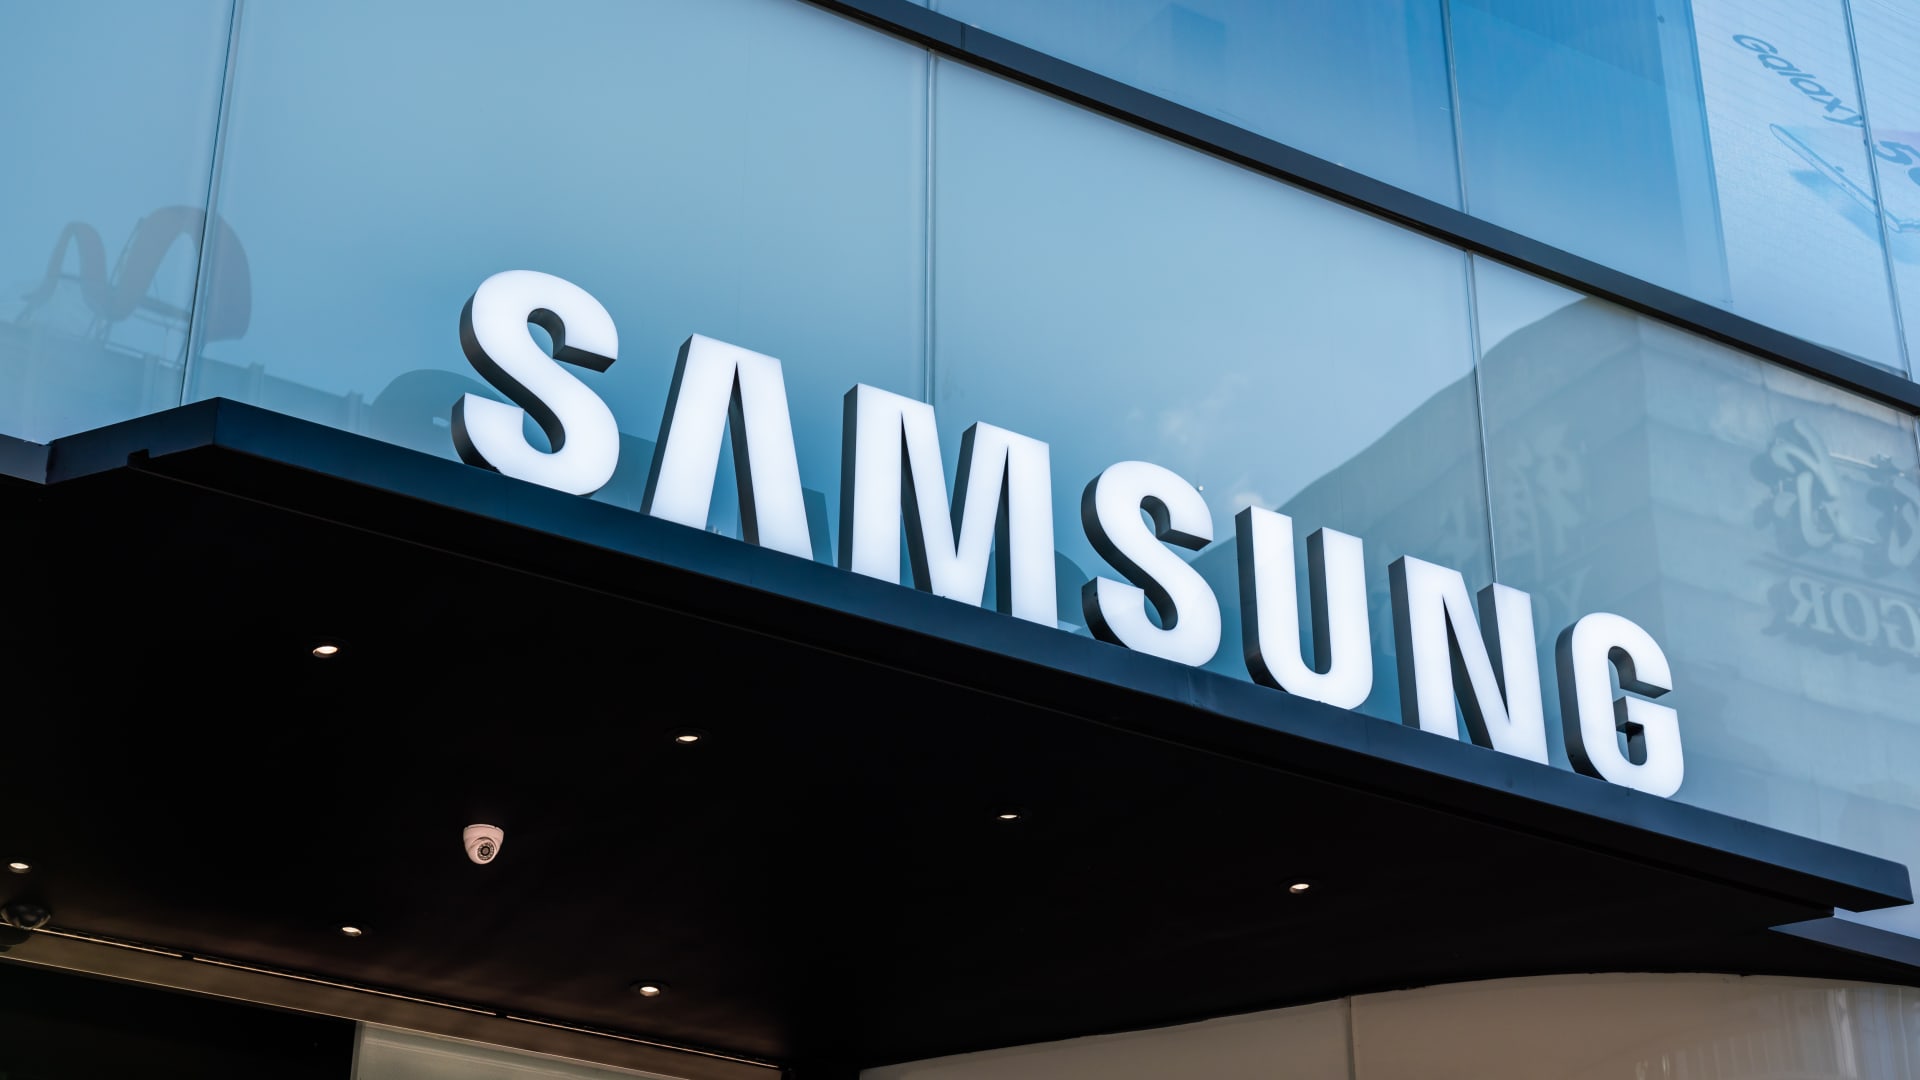 Samsung haalt $752 miljoen order binnen bij NVIDIA voor kunstmatige intelligentiechips